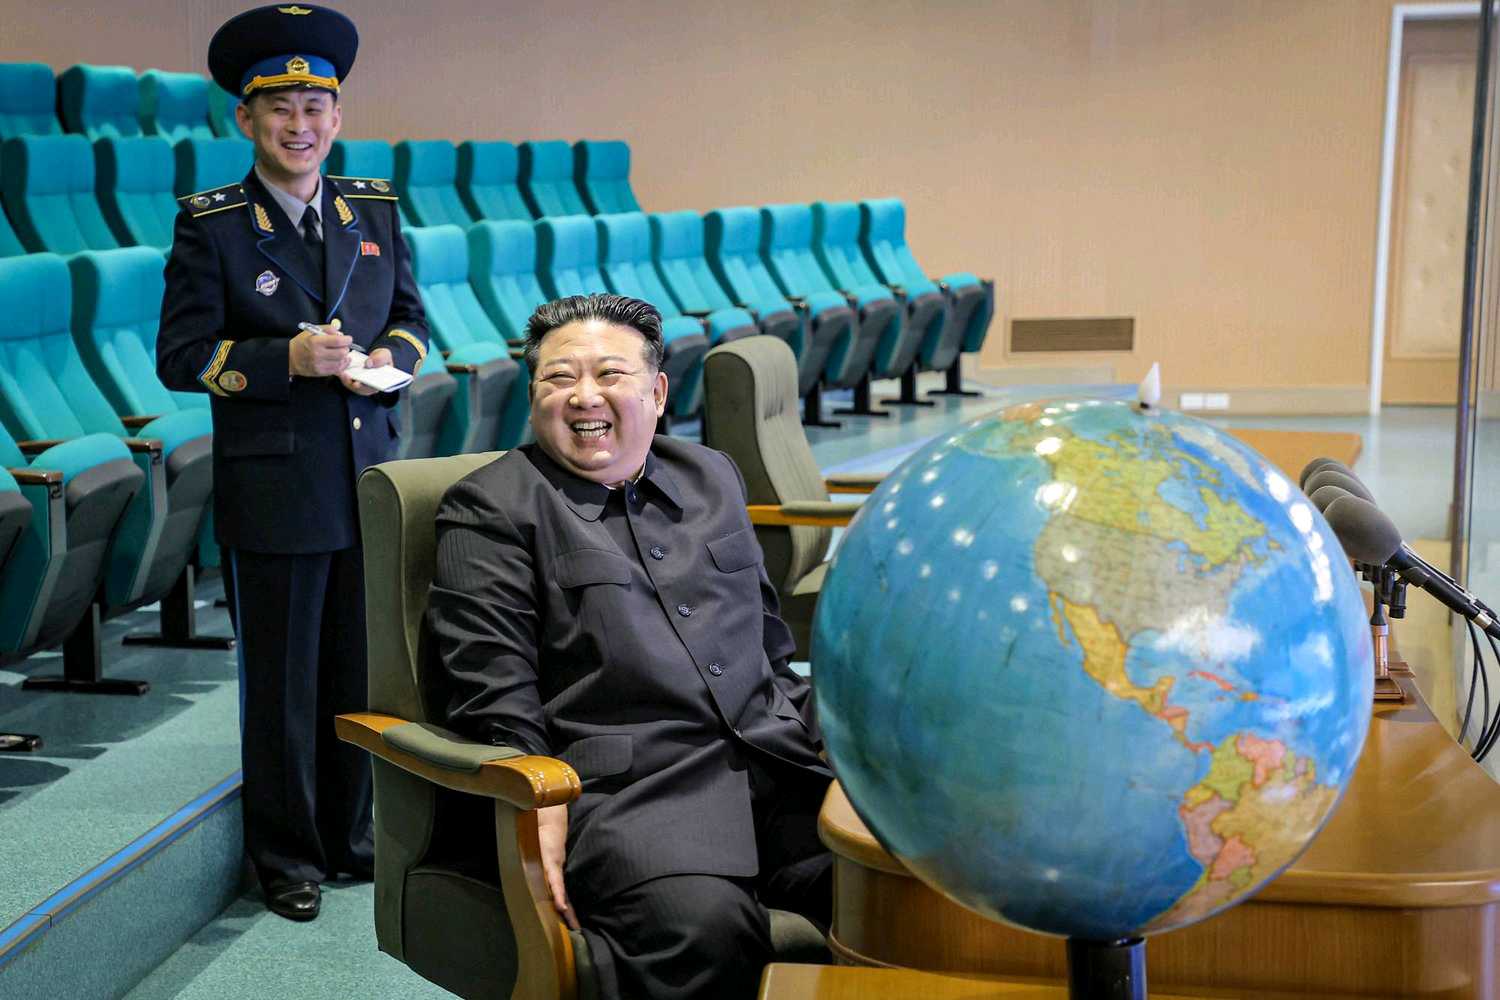 لأول مرة كوريا الشمالية تبدأ عمليات التجسس عبر الأقمار الاصطناعية